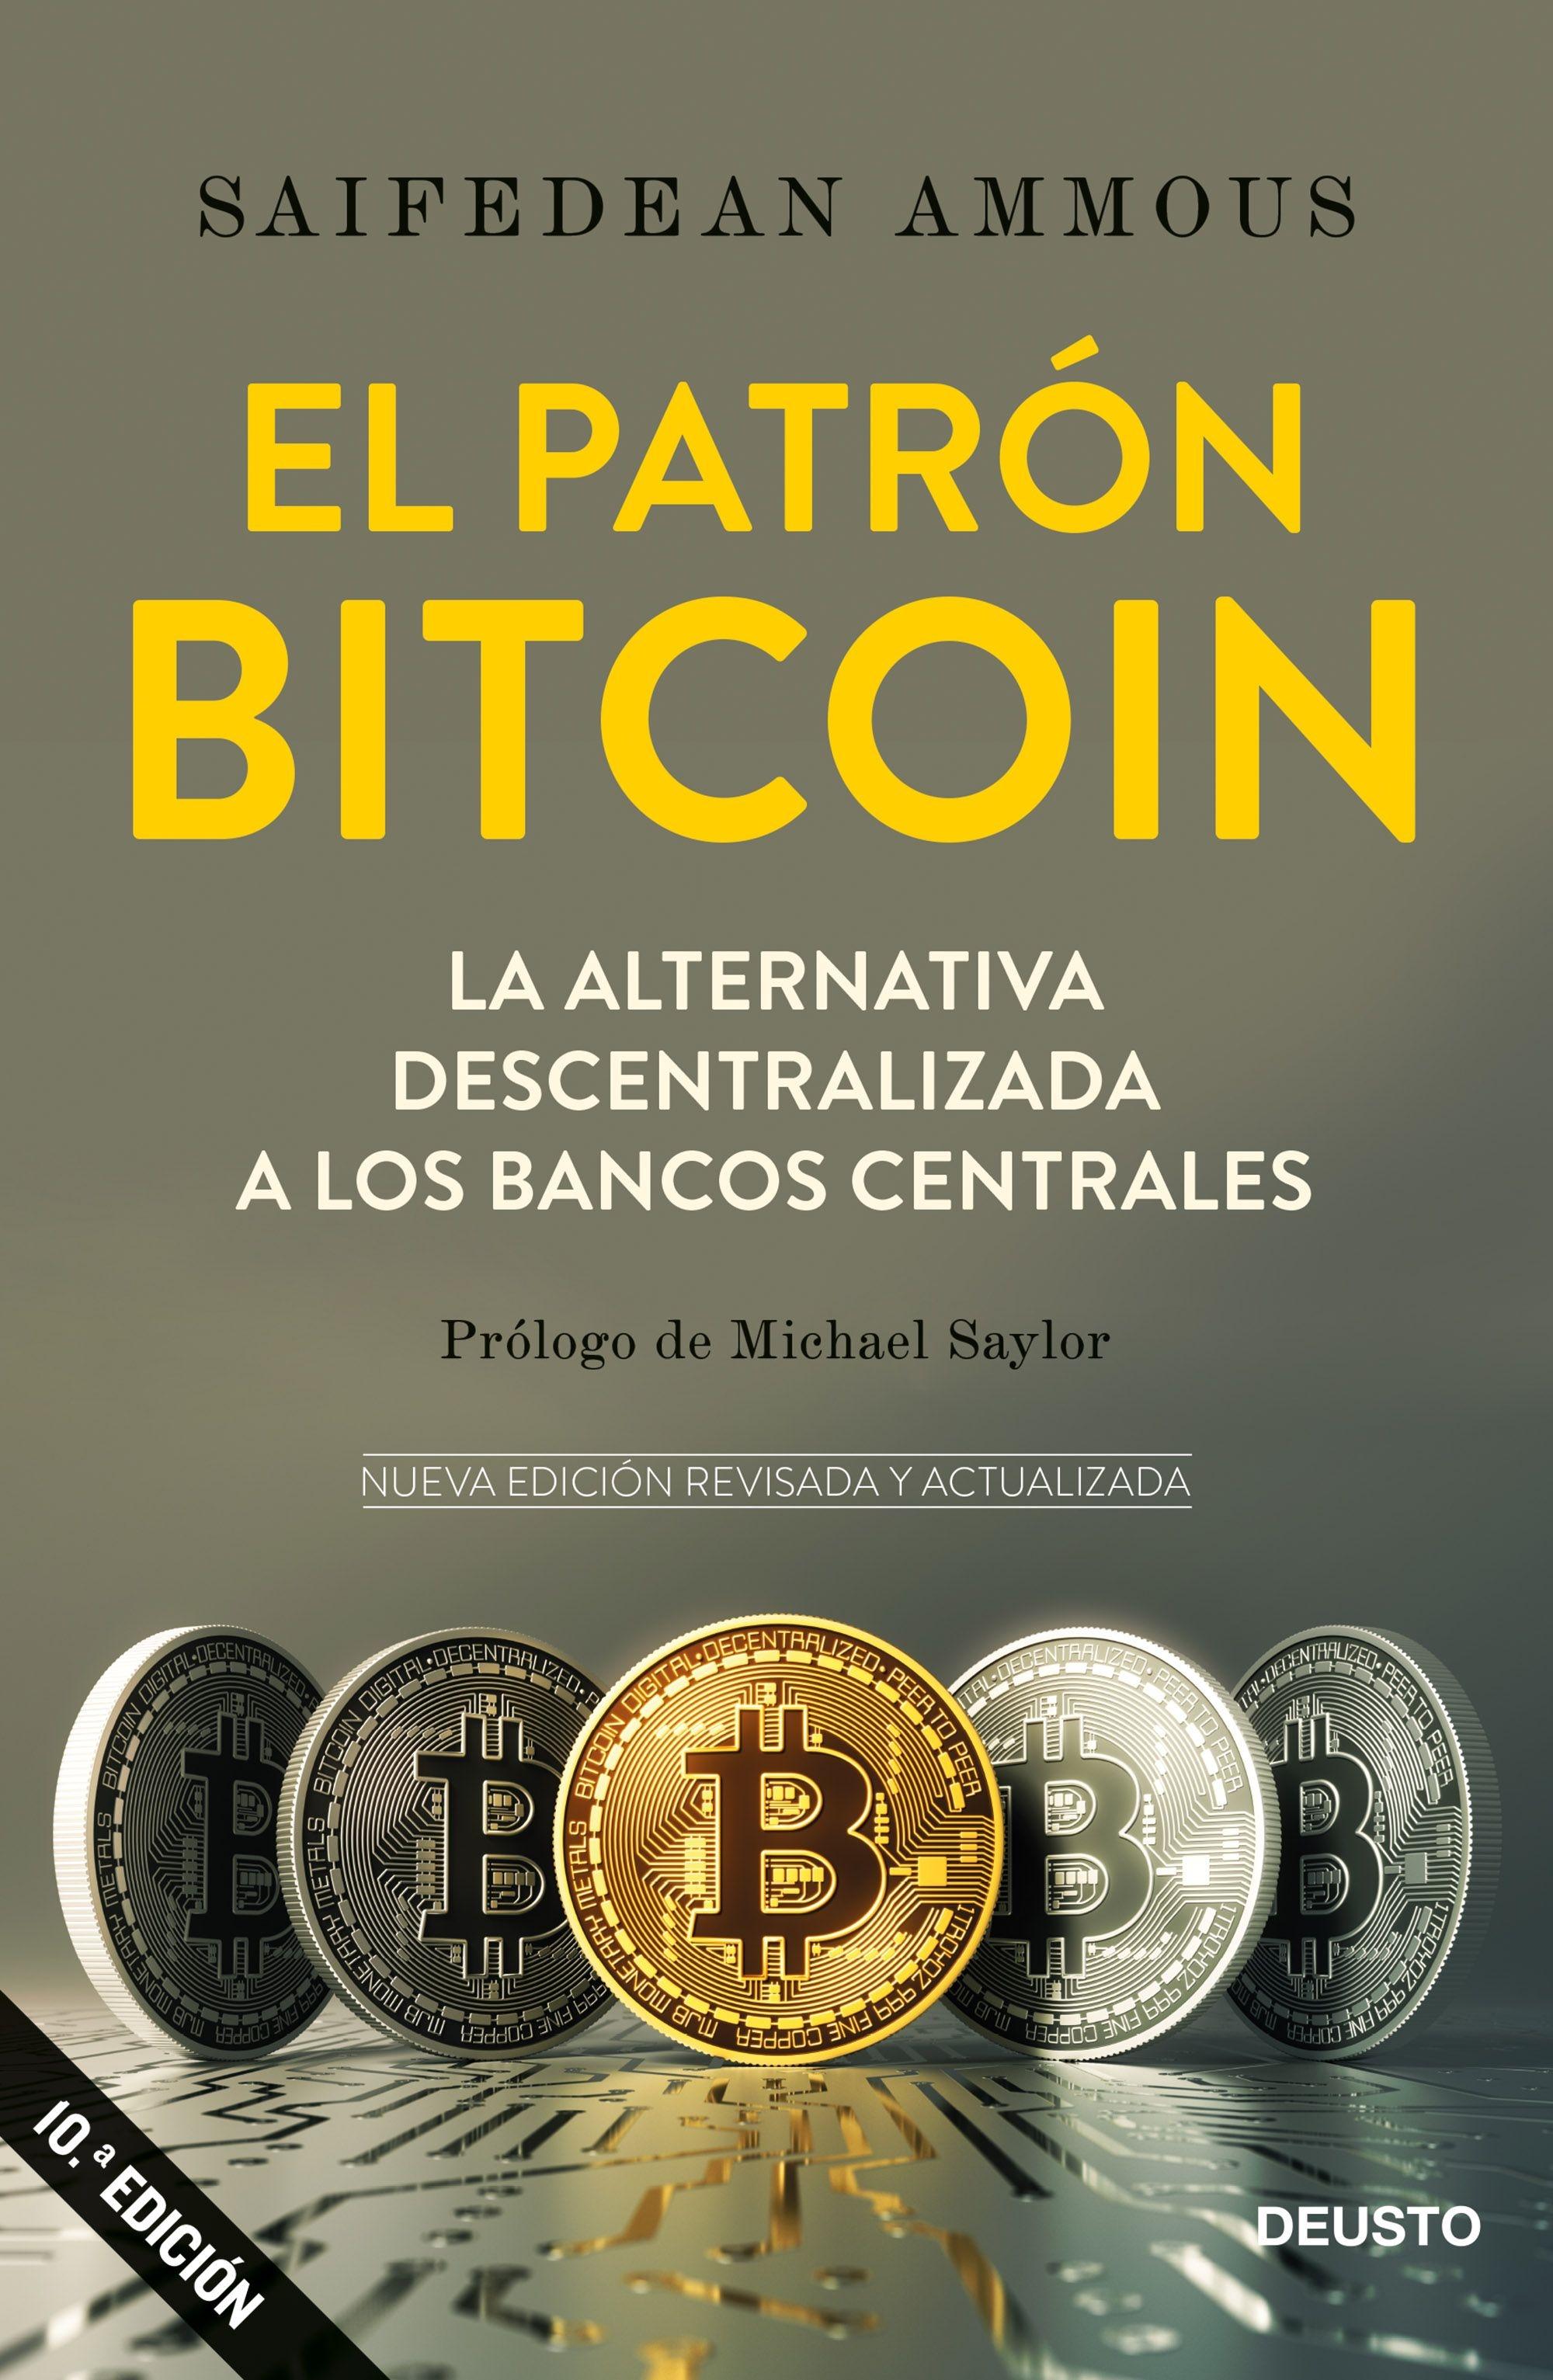 Patrón Bitcoin, El "La alternativa descentralizada a los bancos centrales"